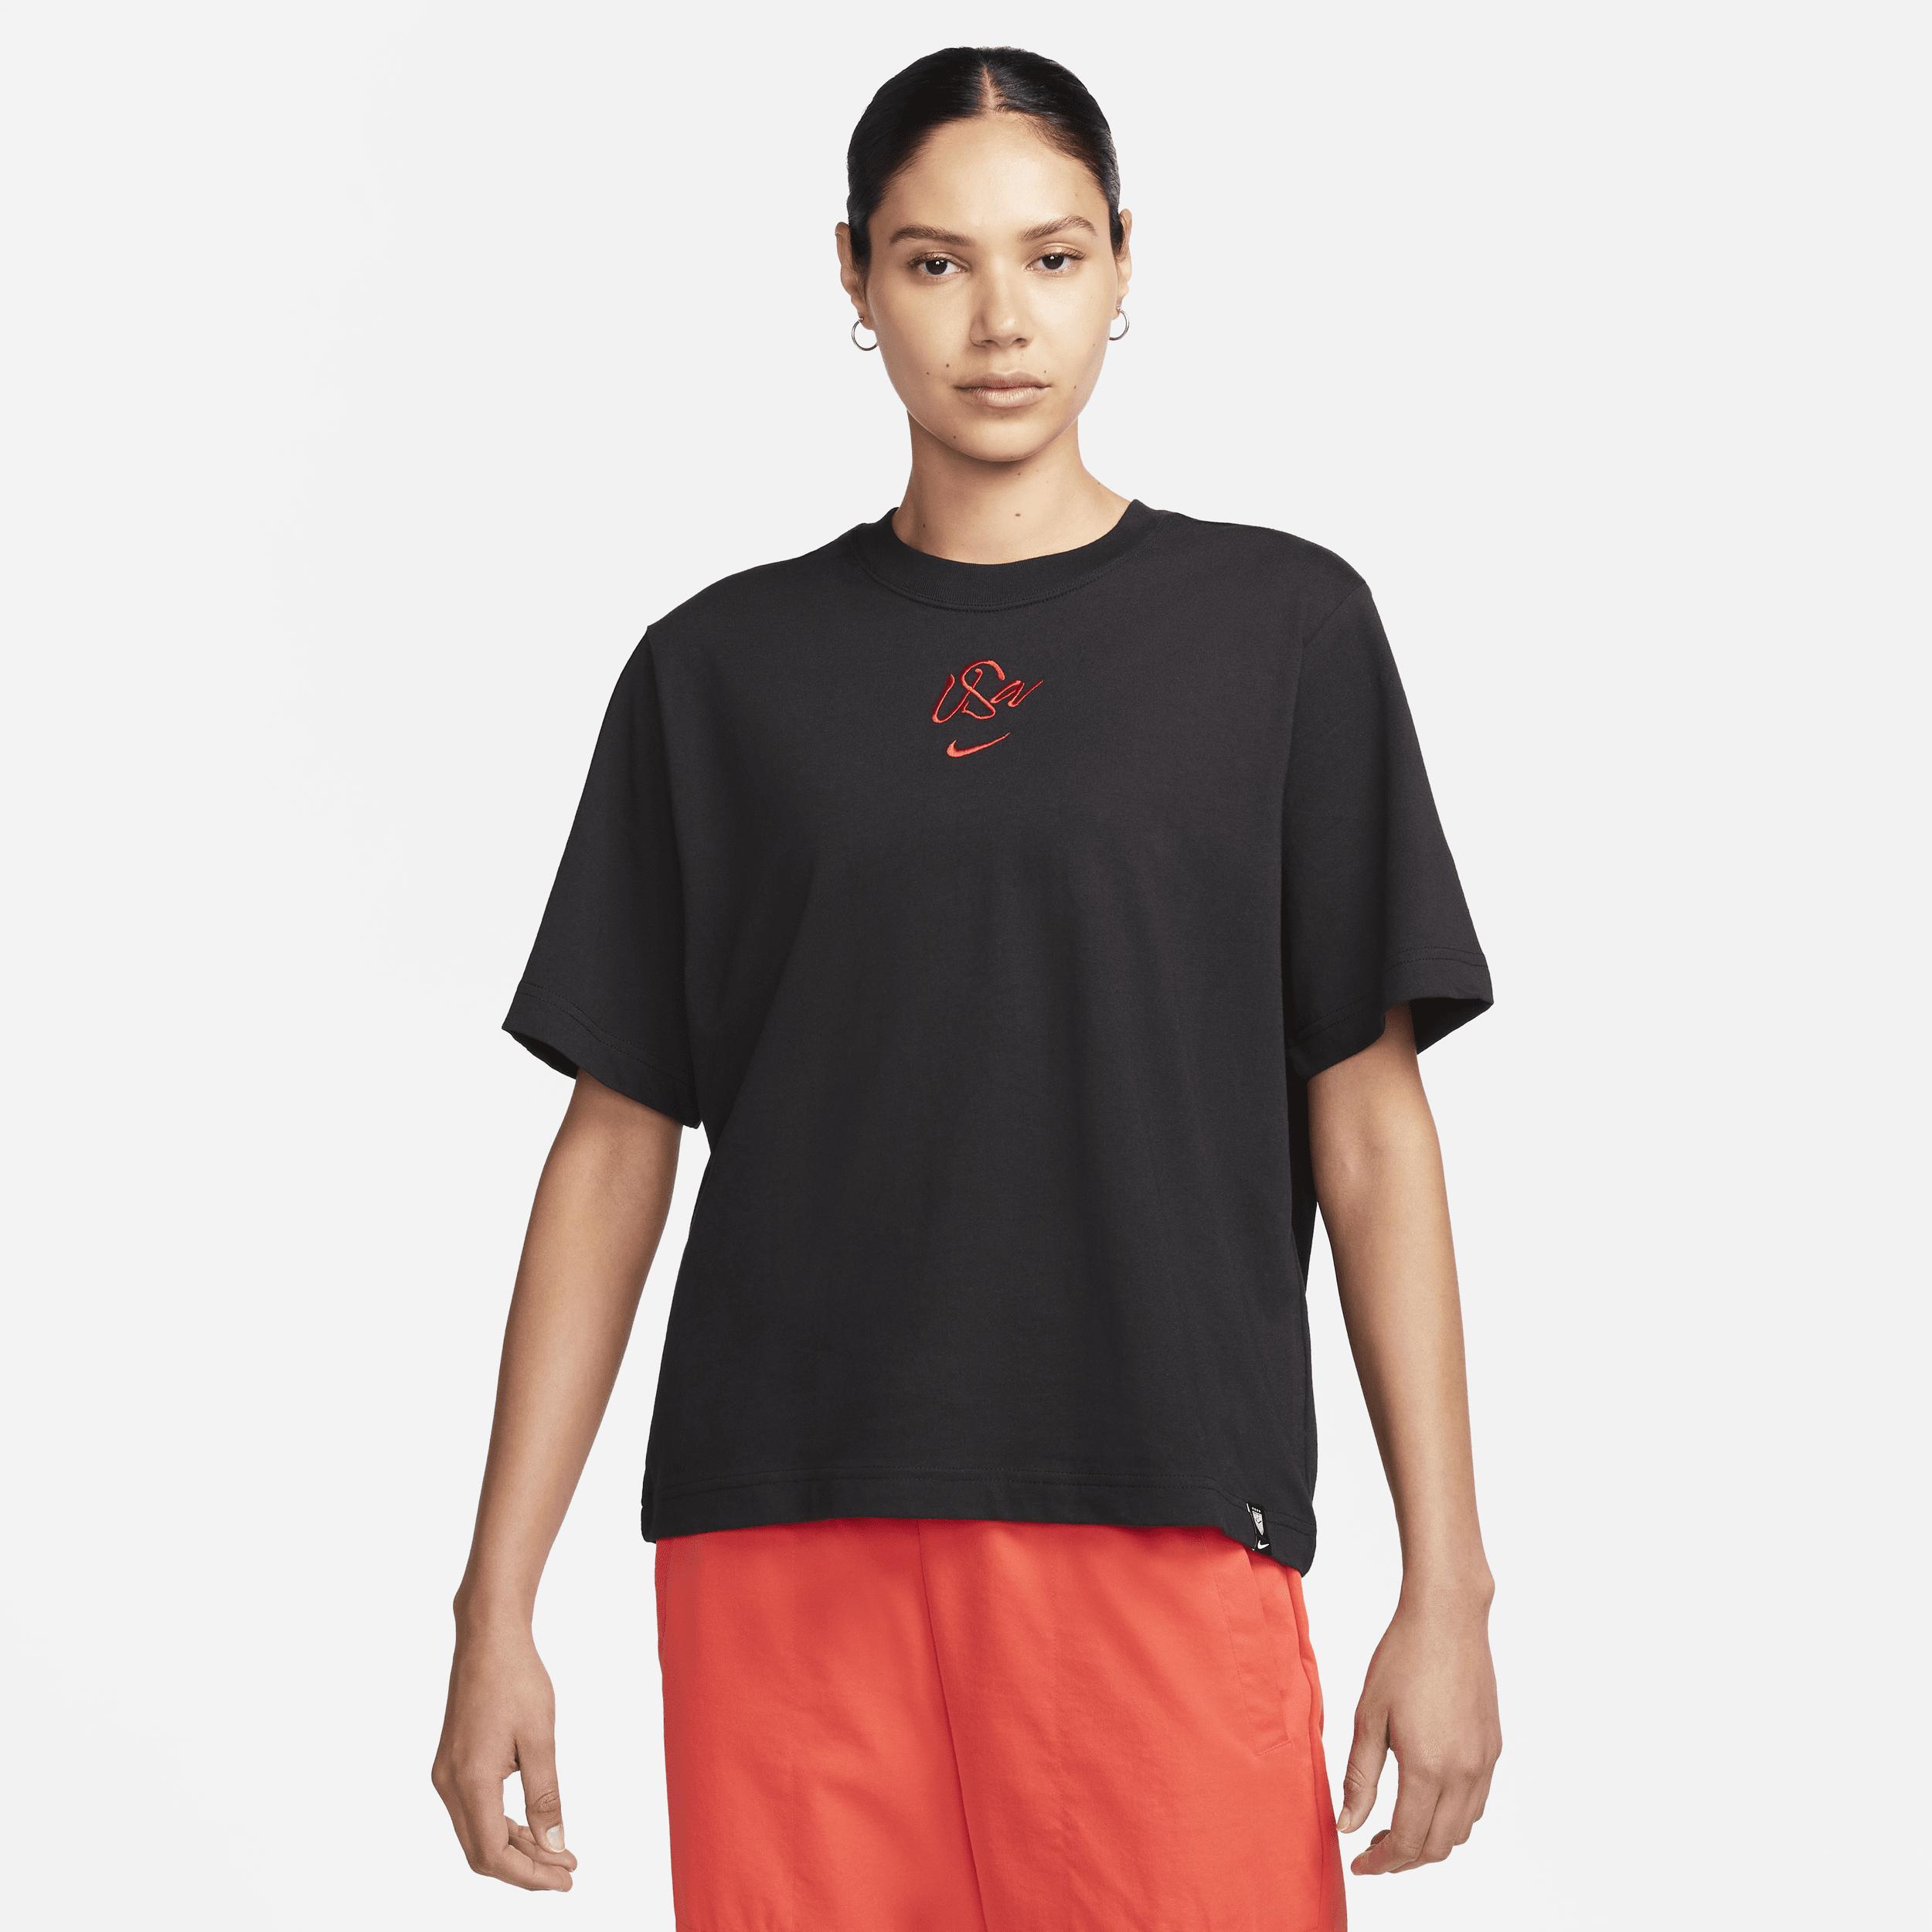 Nike Women's U.S. T-Shirt  Product Image